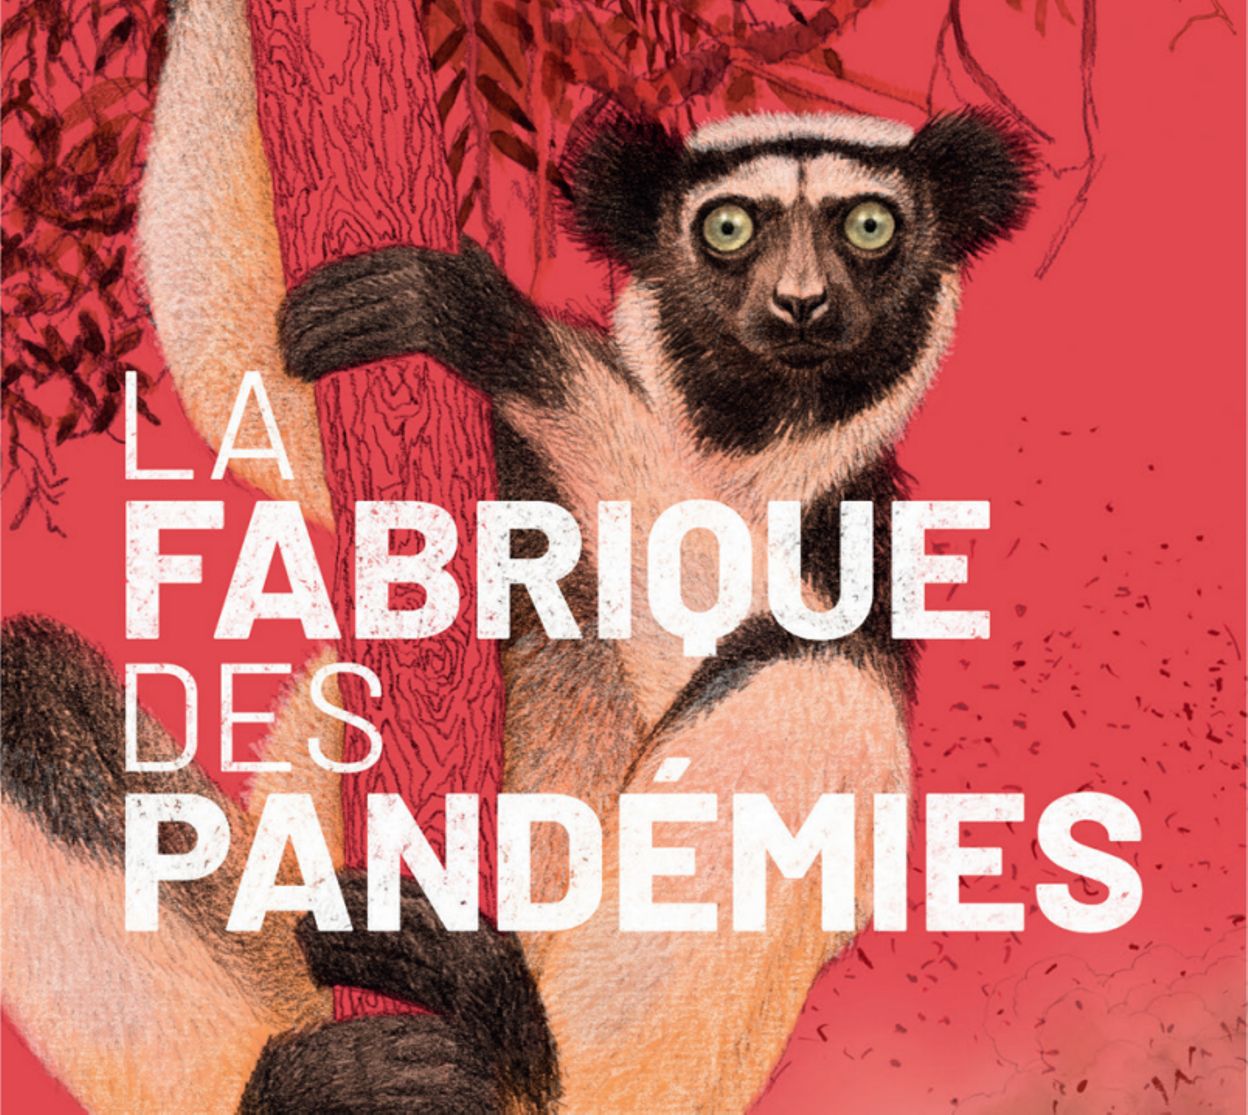 La Fabrique des pandémies" un film documentaire avec Juliette Binoche - rtbf.be